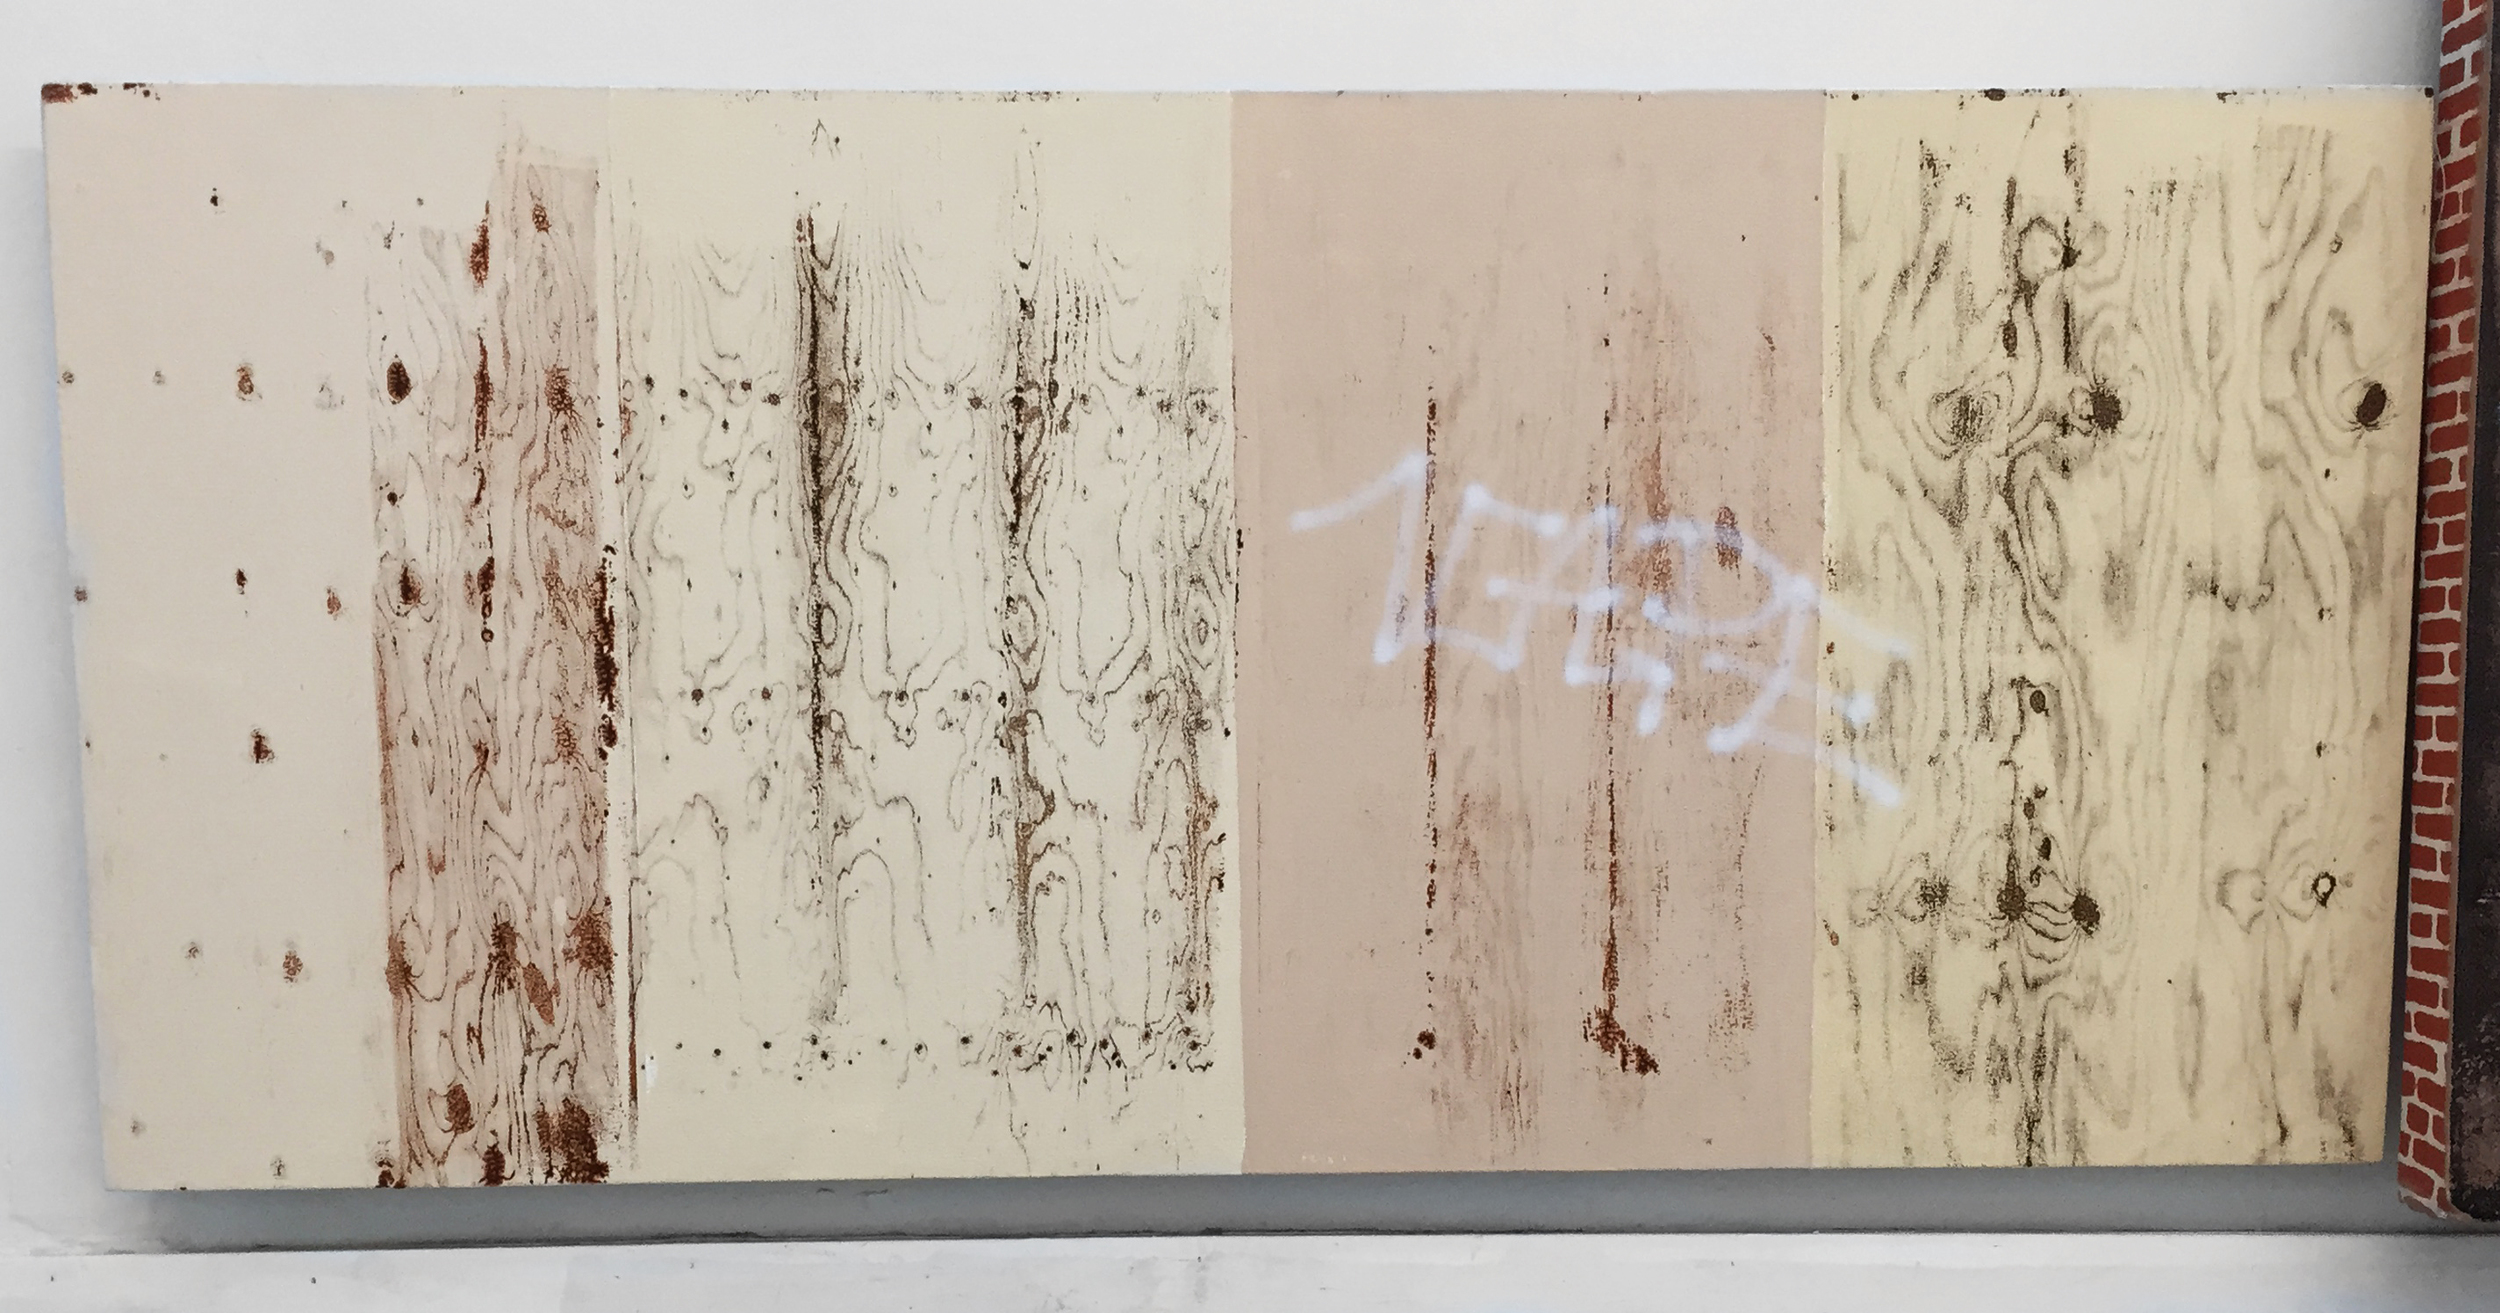  Pentti Monkkonen,&nbsp; Plywood Wall (Vape)  acrylic on canvas,&nbsp;20 x 43 in 